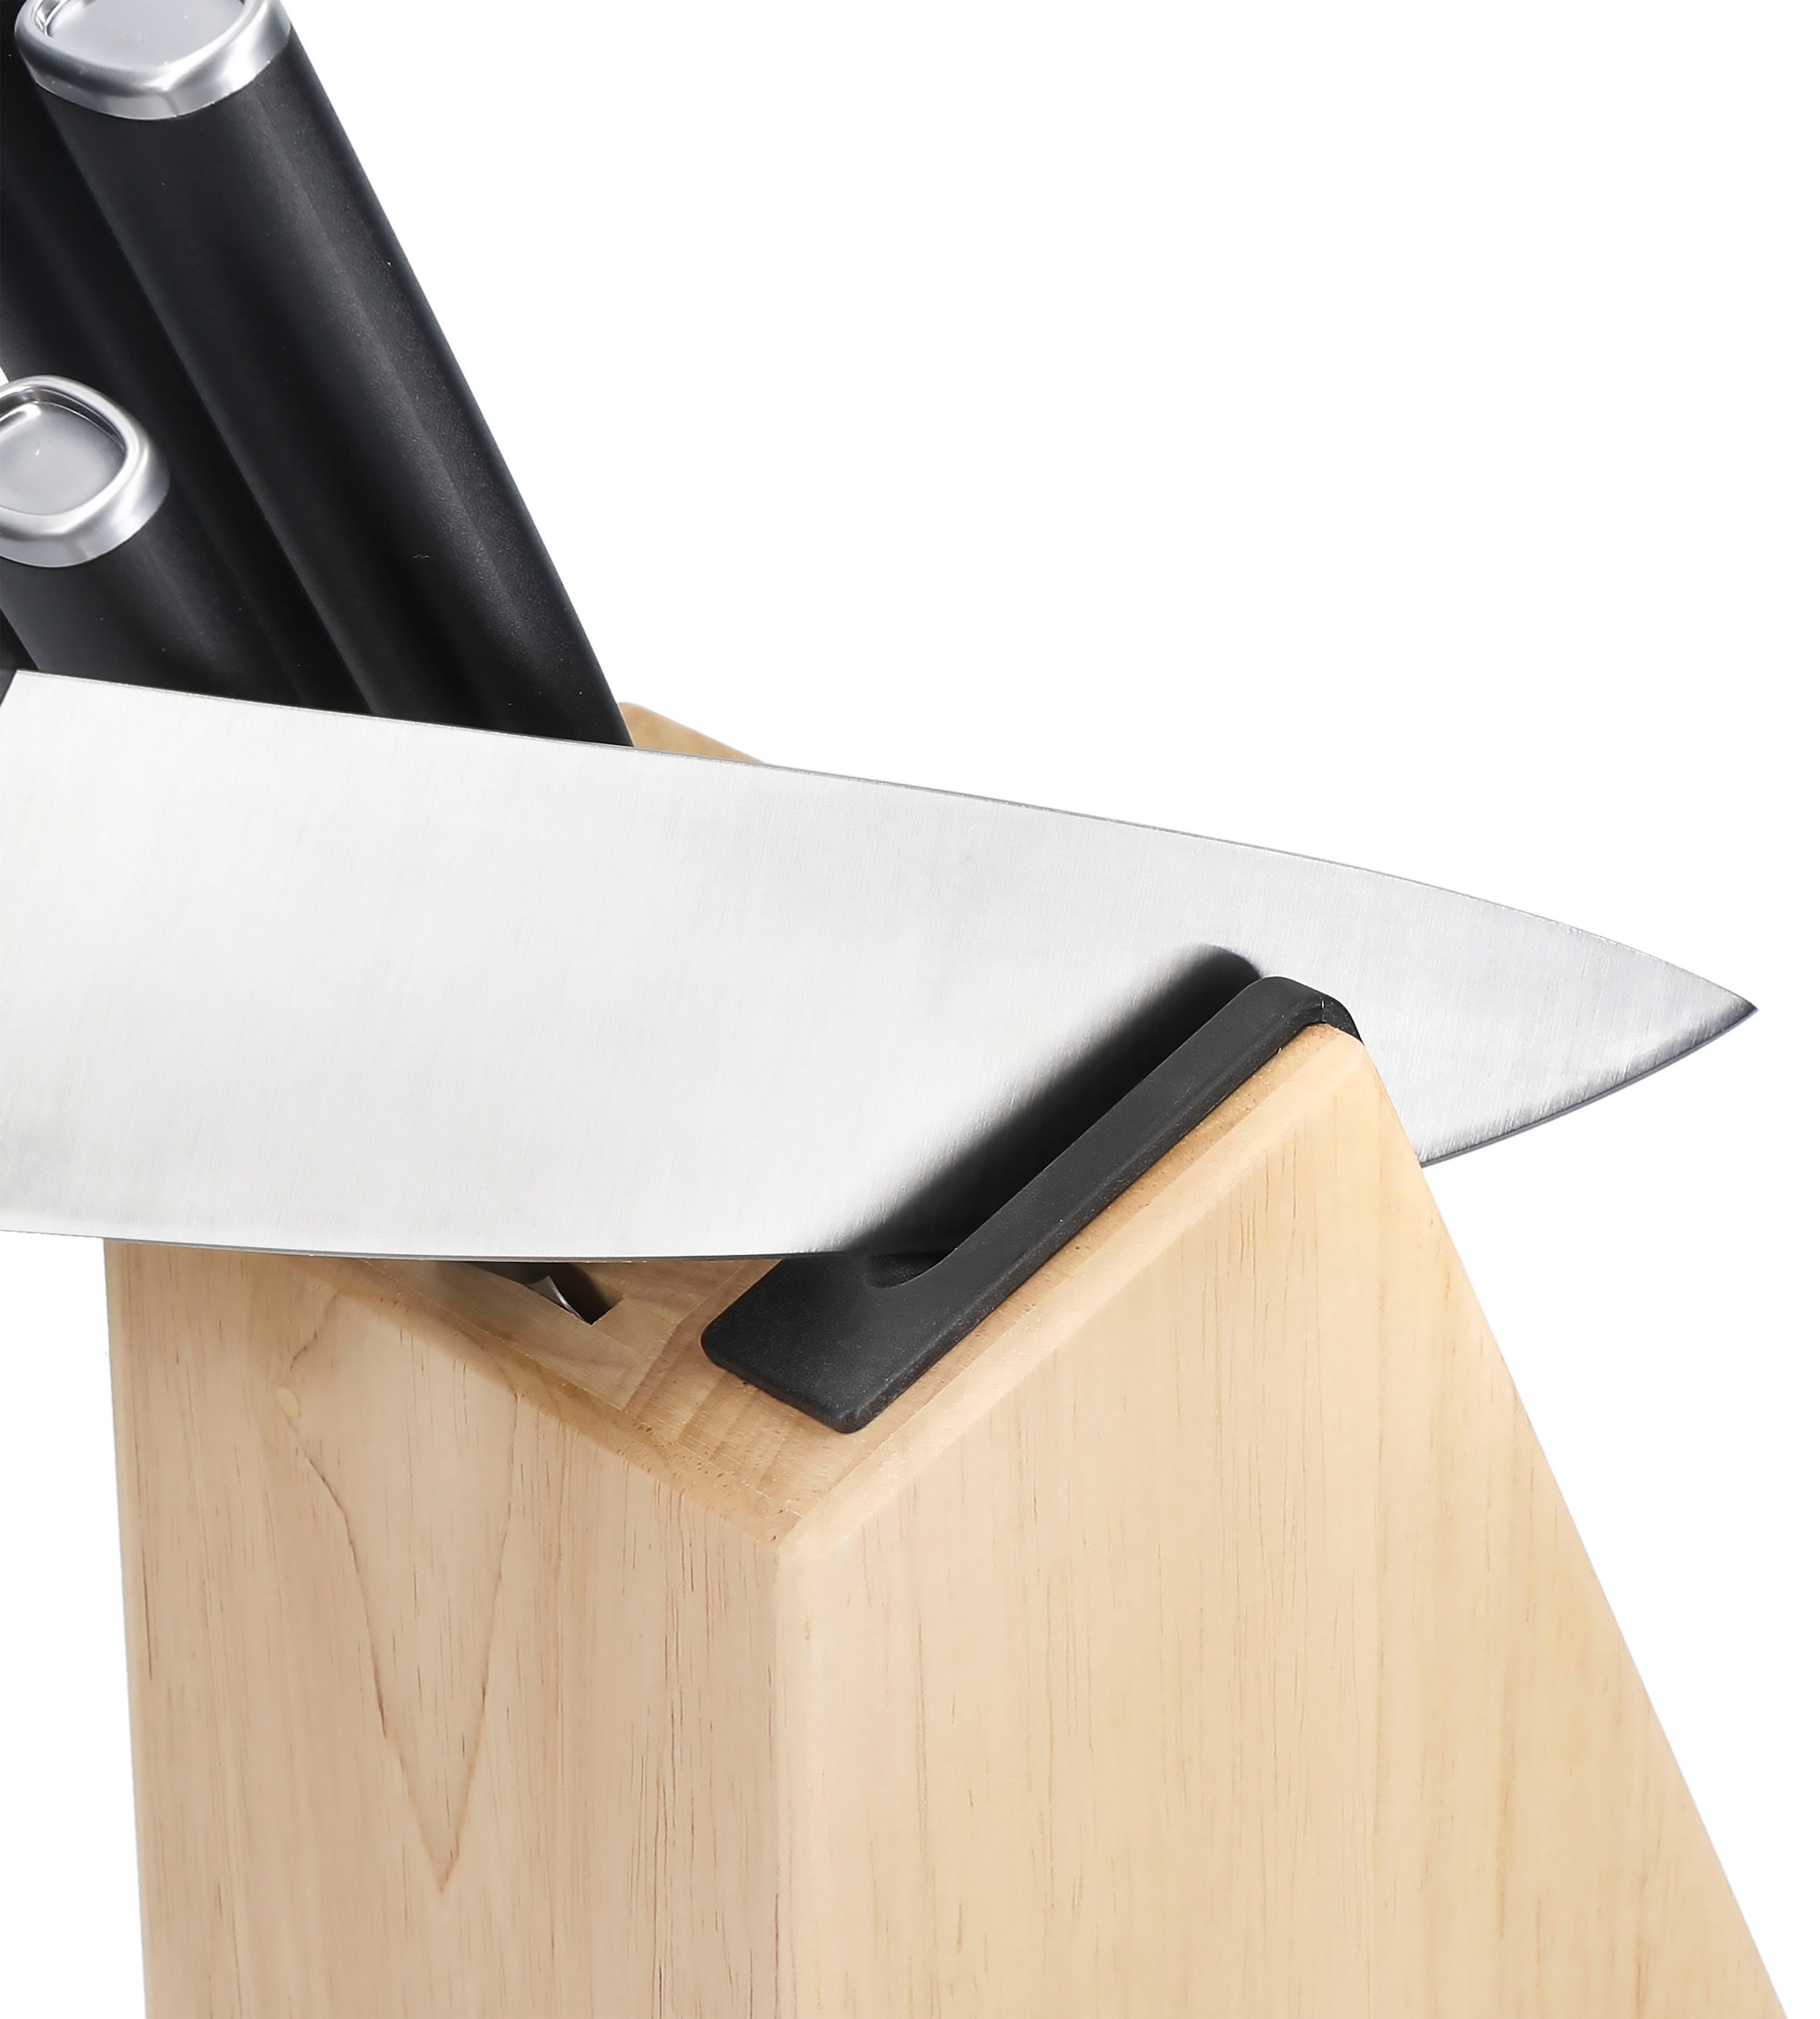 KitchenAid Messerblock »Classic«, 5 tlg., Messer japanischer Stahl, Schärfer, Birkenholzblock